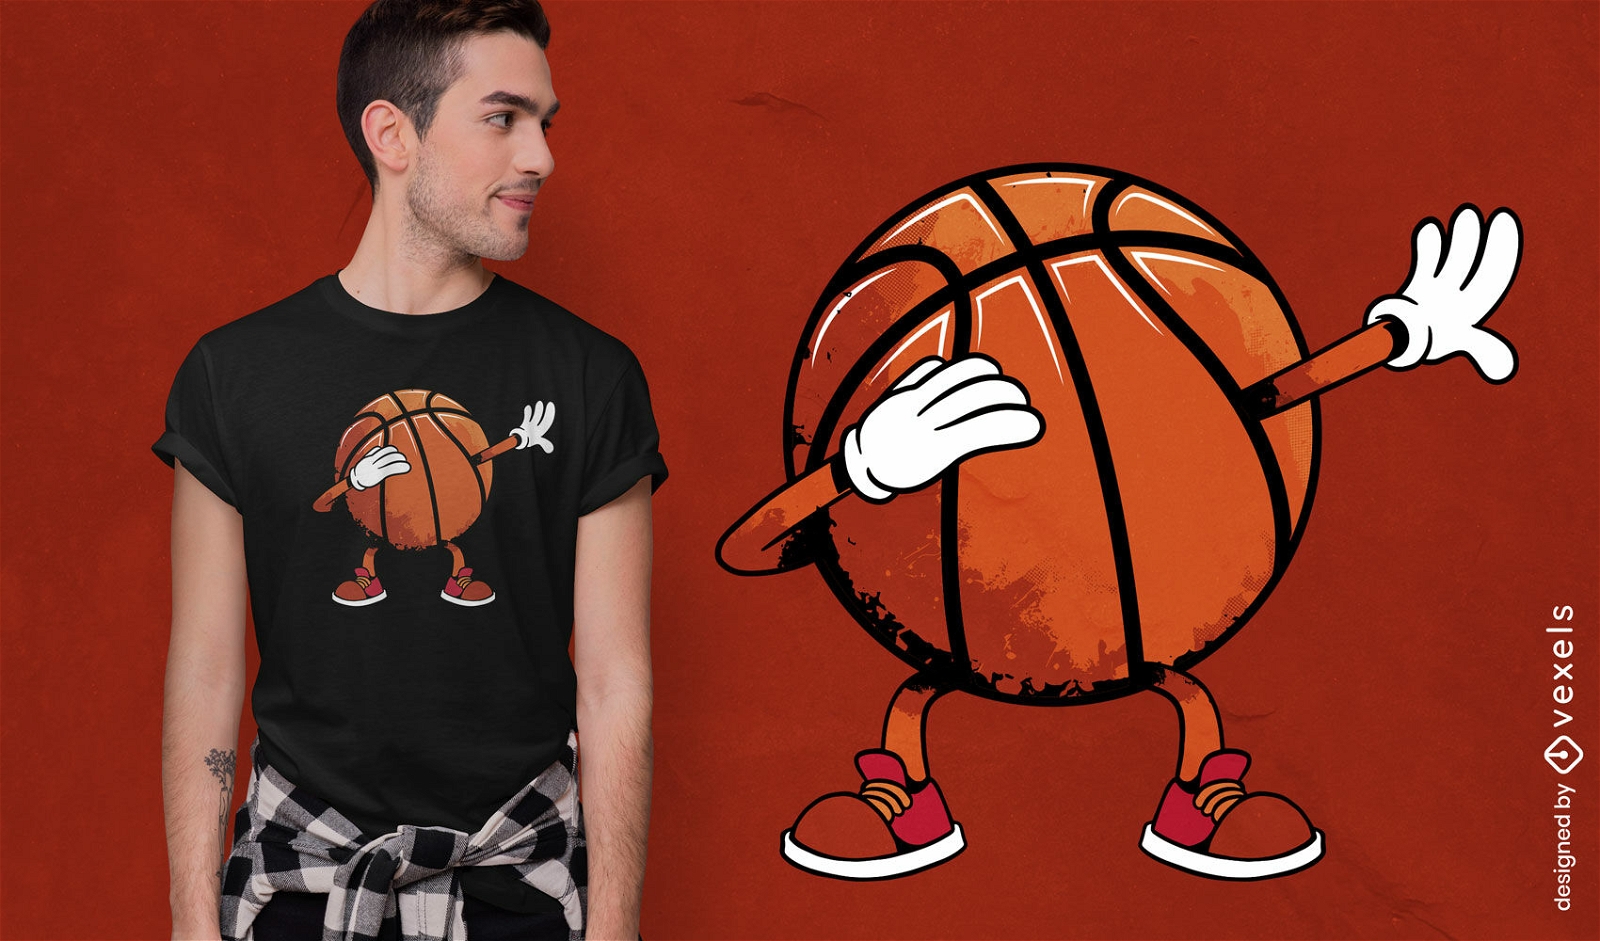 Dise?o de camiseta de baloncesto retro Dabbing.